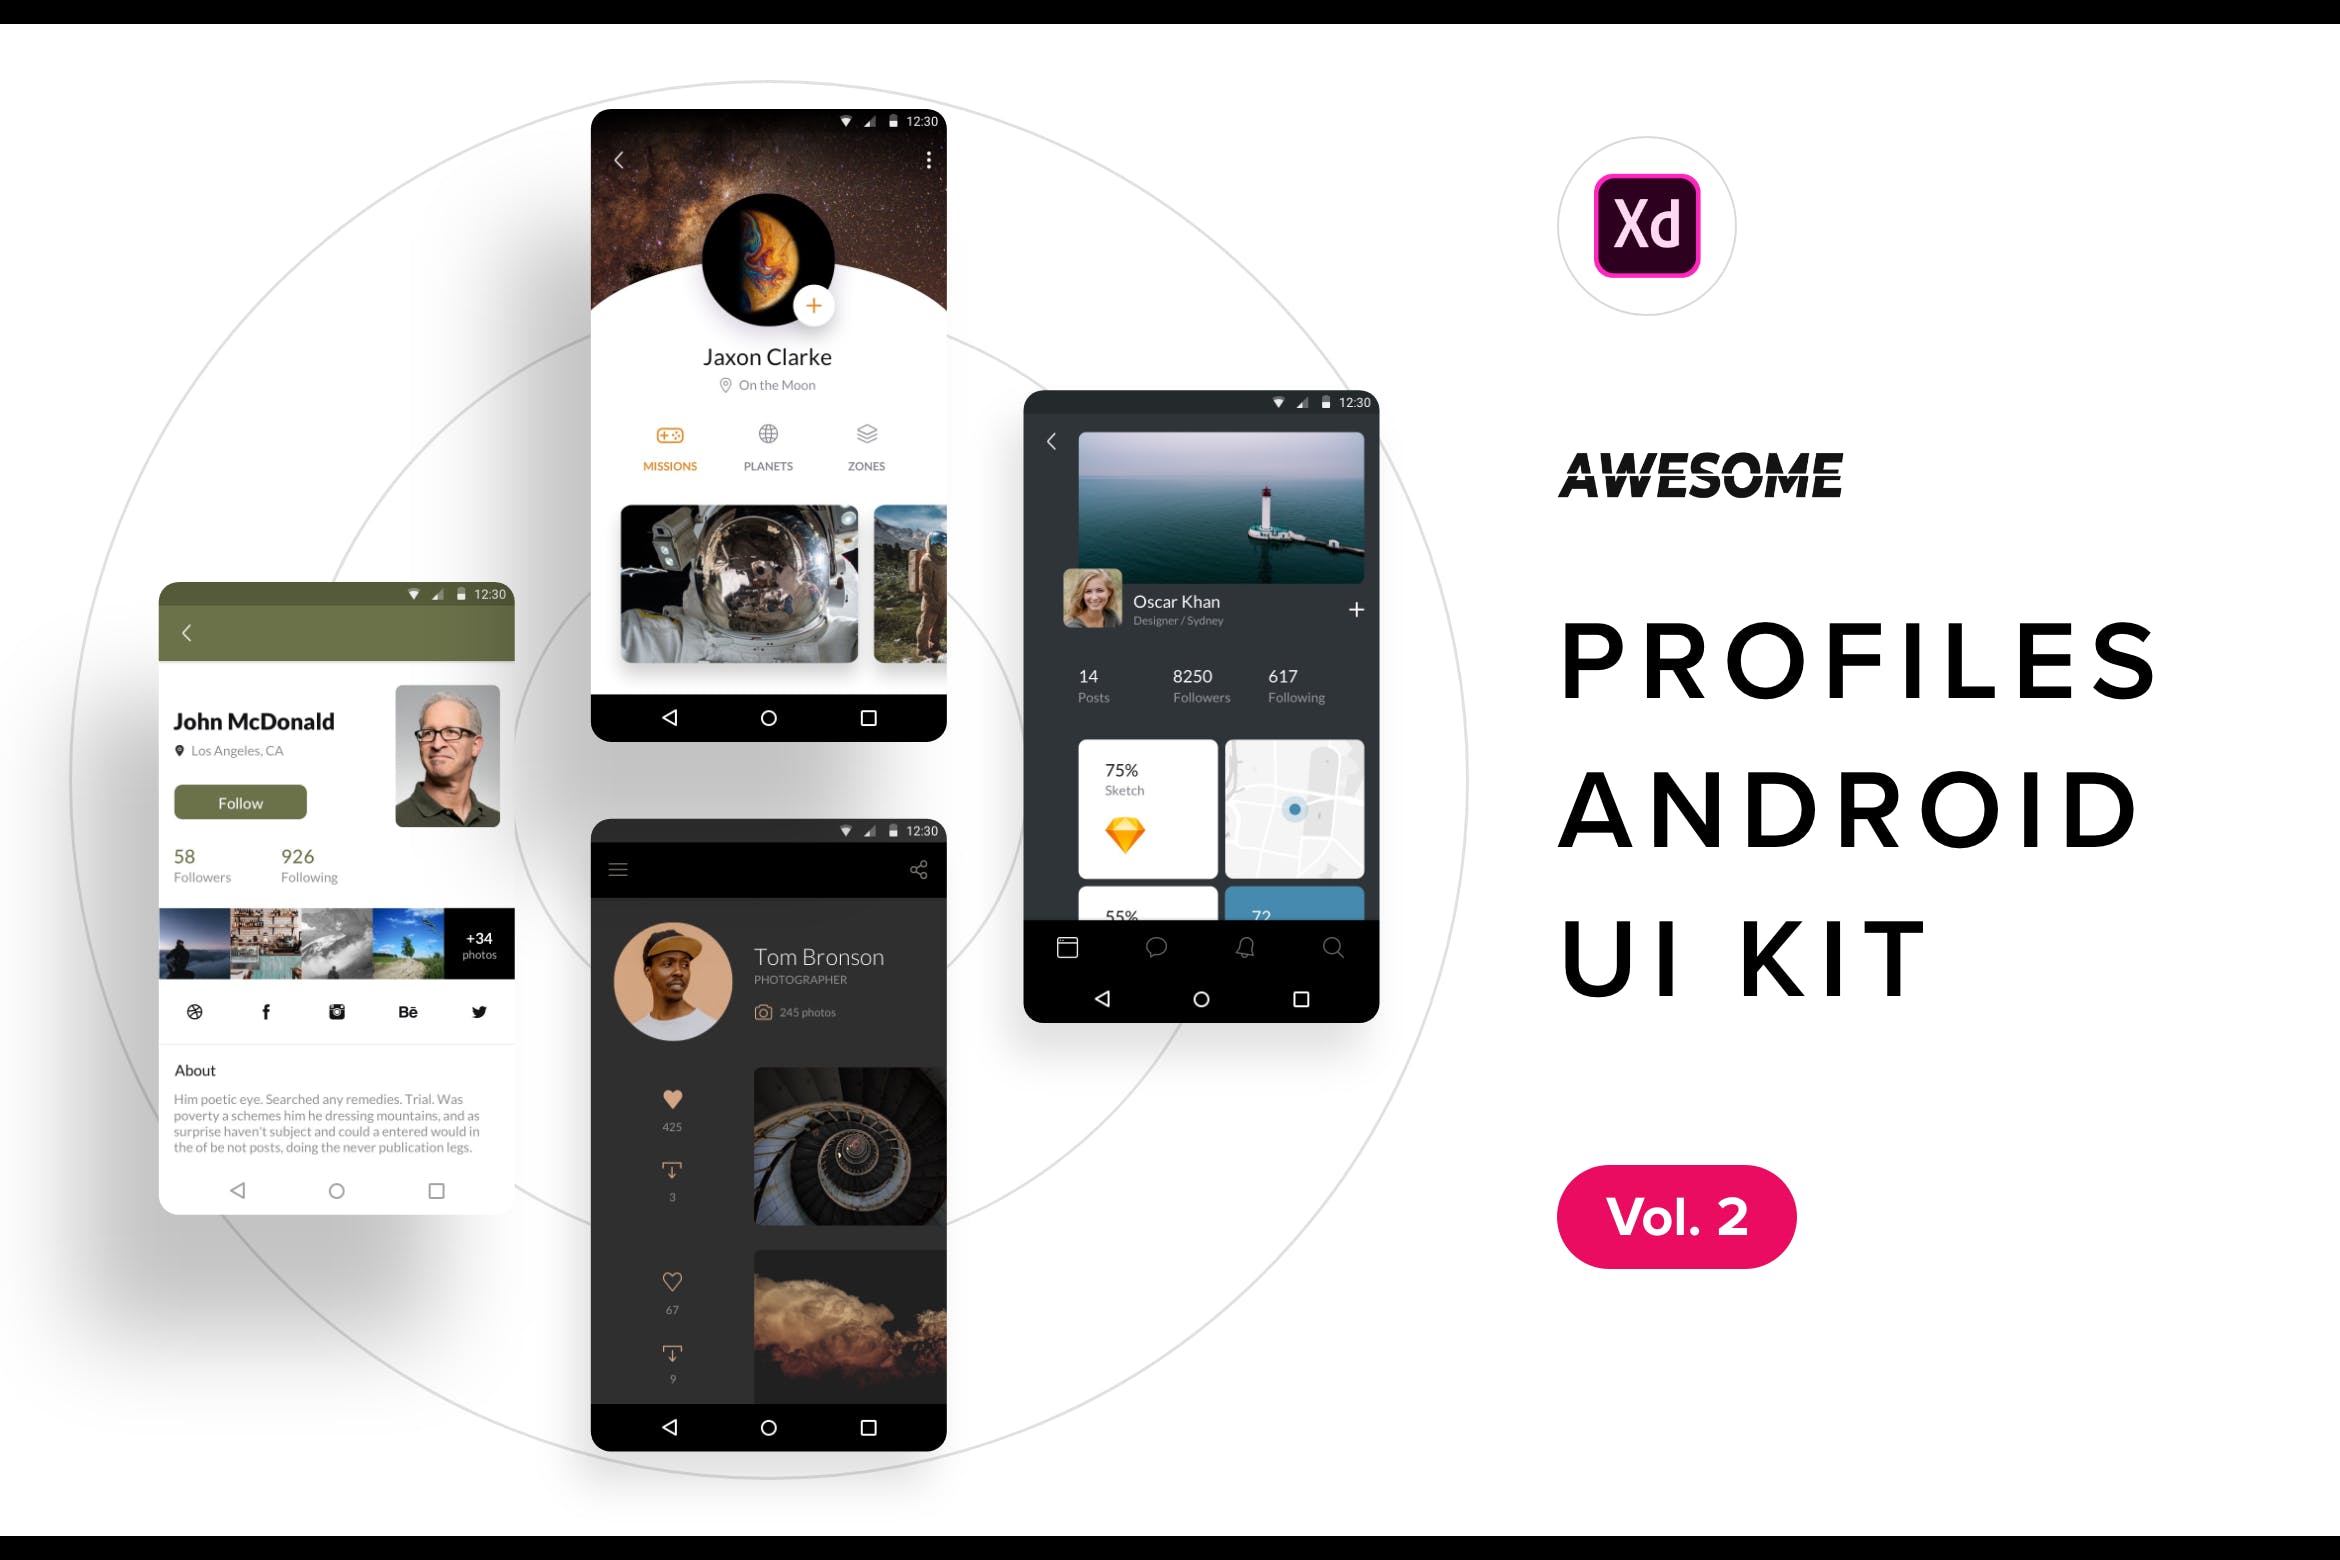 安卓平台社交APP应用用户界面设计XD模板v2 Android UI Kit – Profiles Vol. 2 (Adobe XD)插图